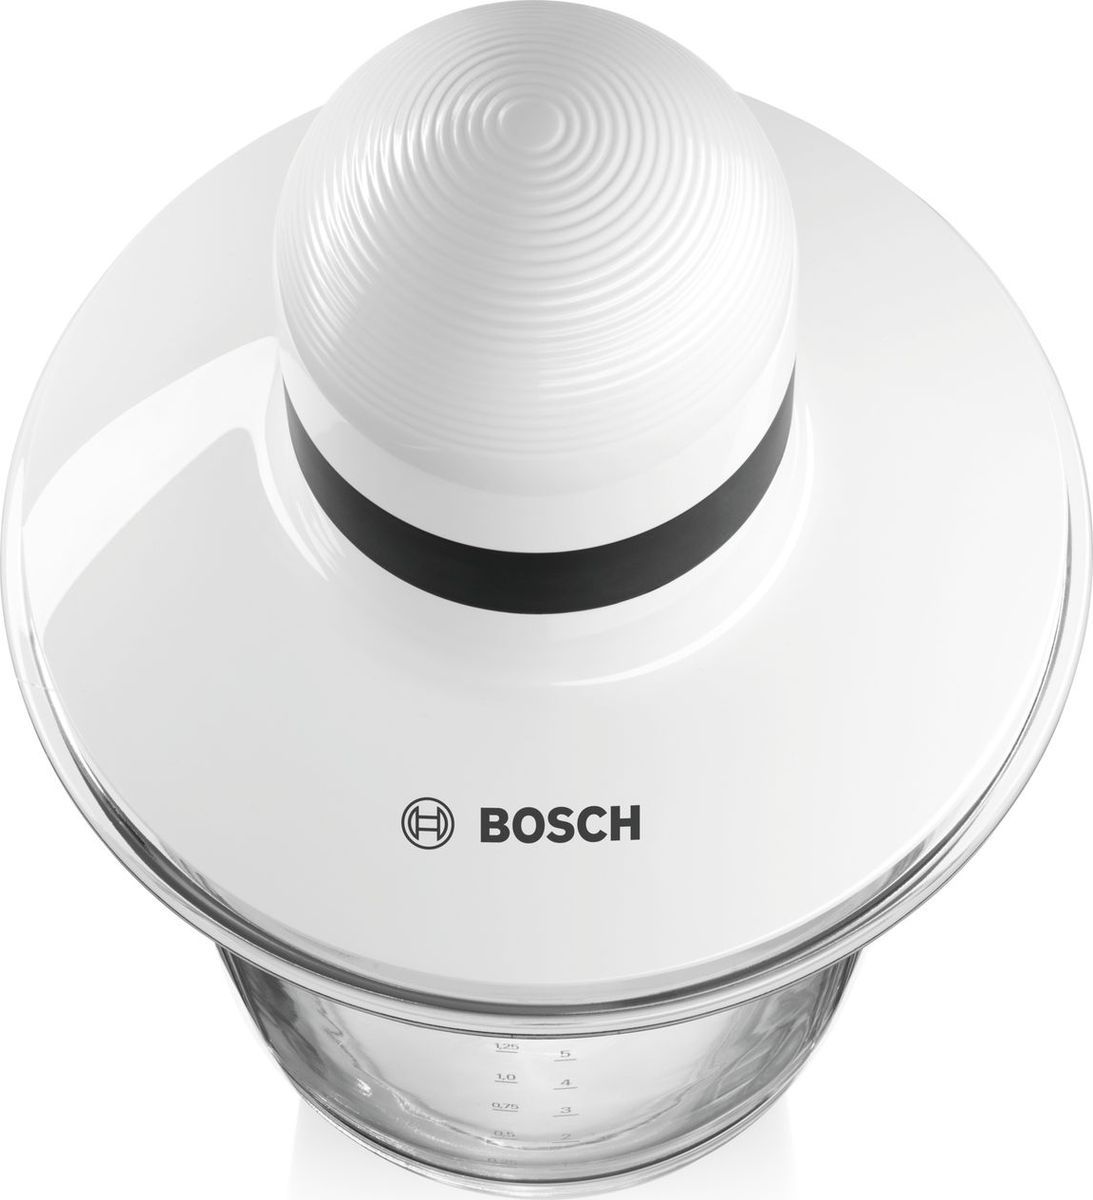  Bosch MMR15A1